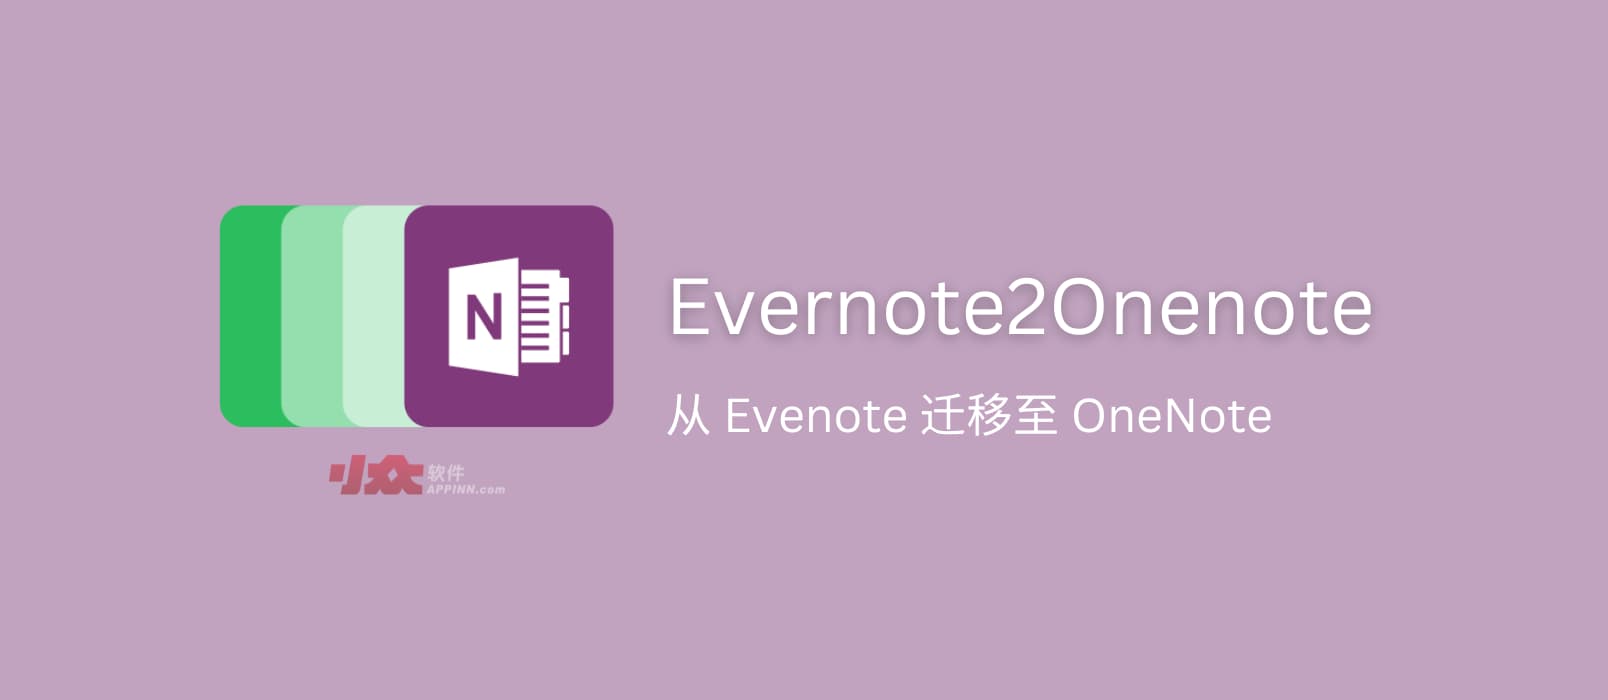  Evernote2Onenote - 将笔记从 Evenote 迁移至 OneNote